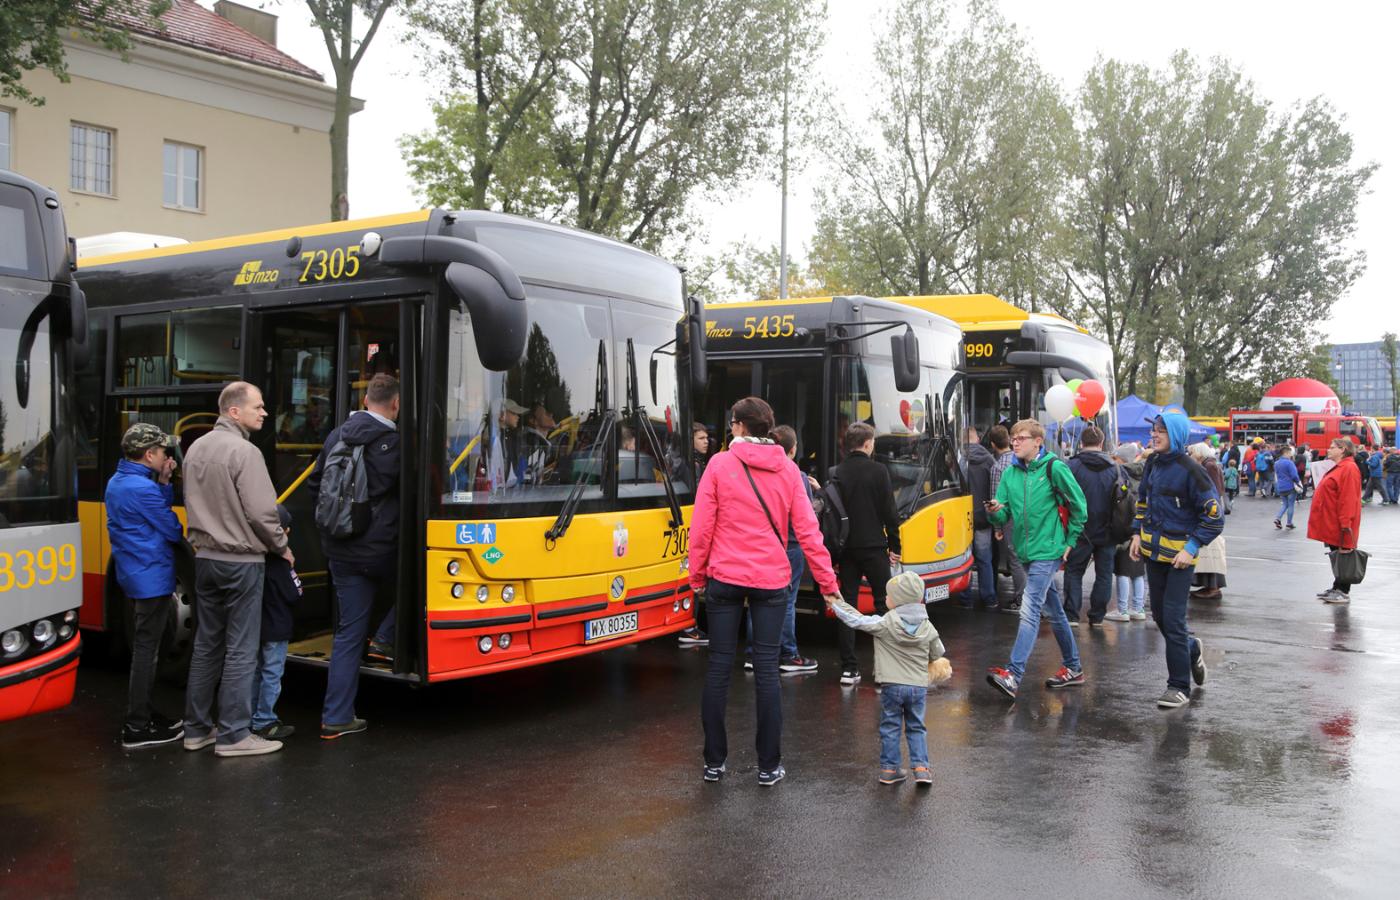 Polskie samorządy są światowym liderem we wdrażaniu darmowego transportu publicznego, co sprzyja przesiadaniu się mieszkańców z samochodów do autobusów.